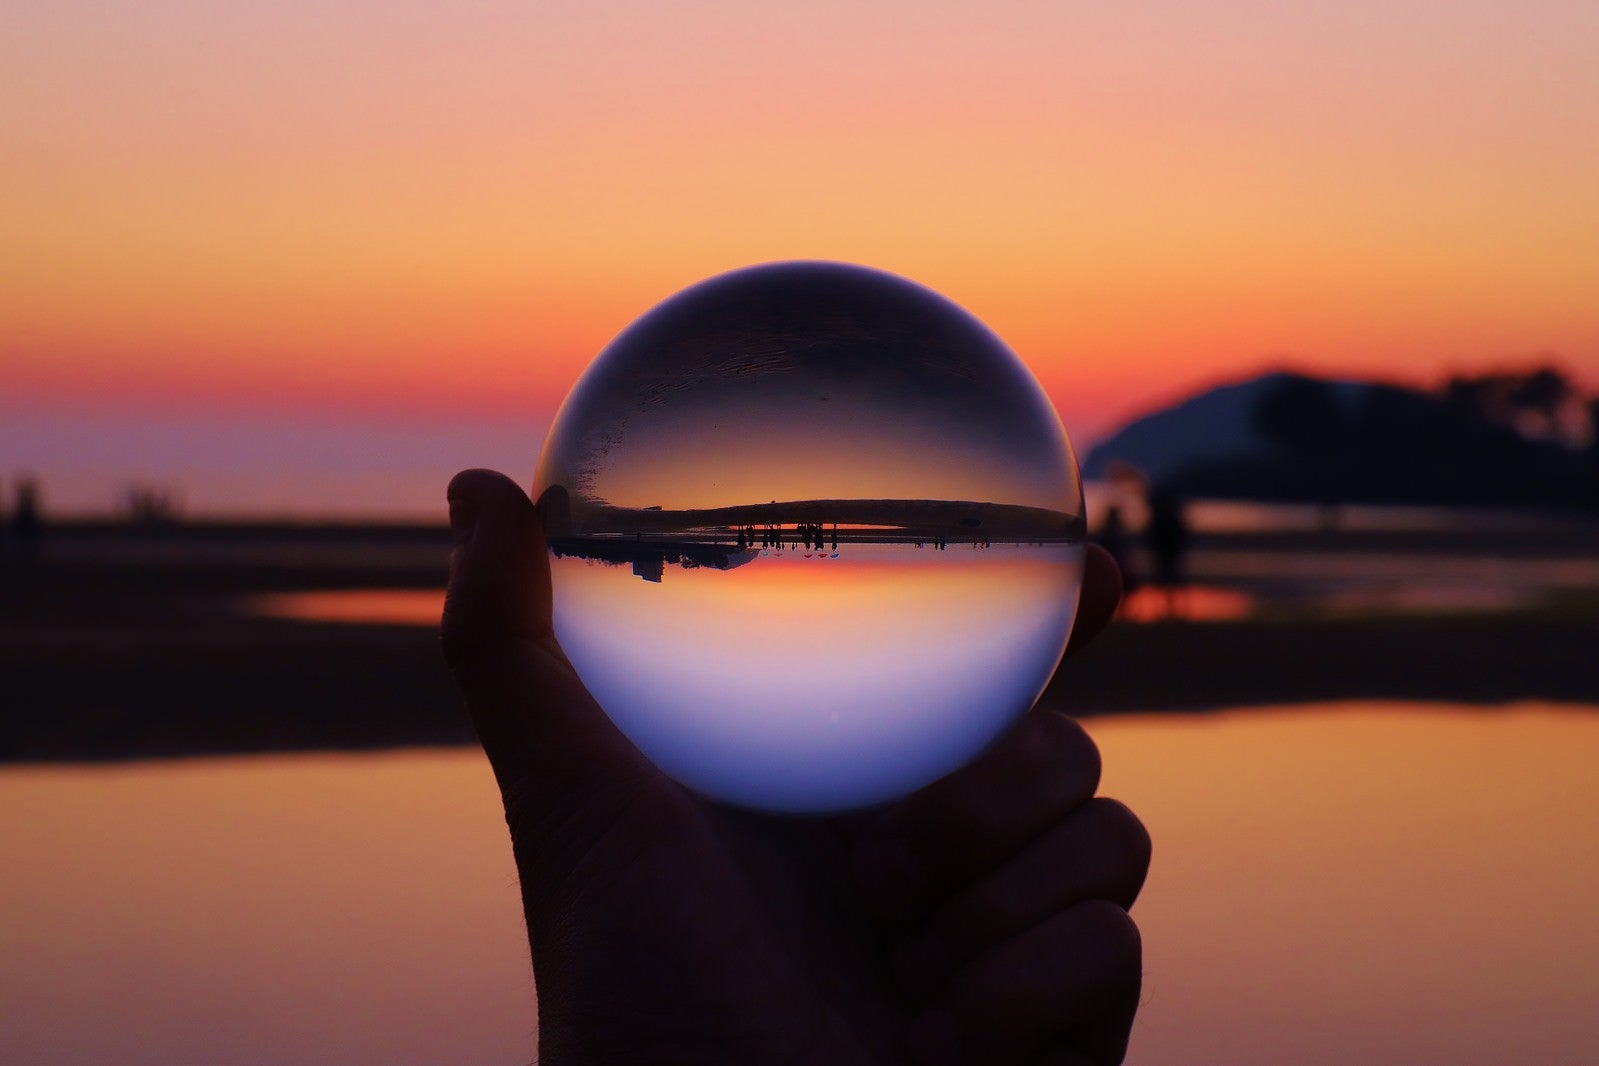 「水晶球の中で反転する日没の夕暮れ」の写真